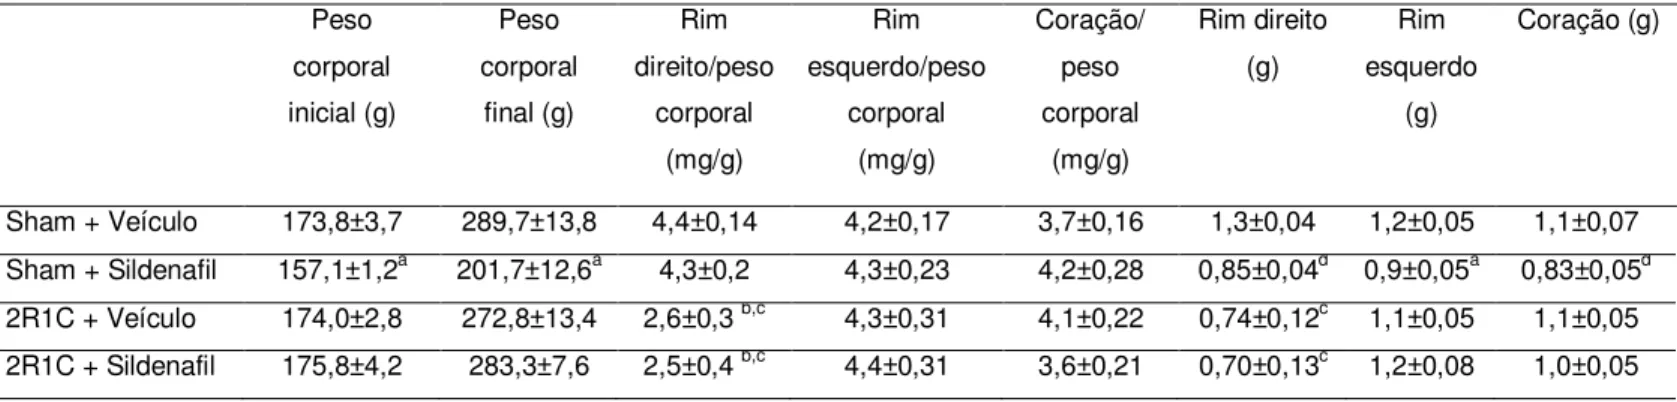 Tabela 1: Valores de peso corporal e peso dos órgãos nos diferentes grupos  Peso  corporal  inicial (g) Peso  corporal final (g) Rim  direito/peso corporal  (mg/g) Rim  esquerdo/peso corporal (mg/g) Coração/ peso corporal (mg/g) Rim direito (g) Rim  esquer